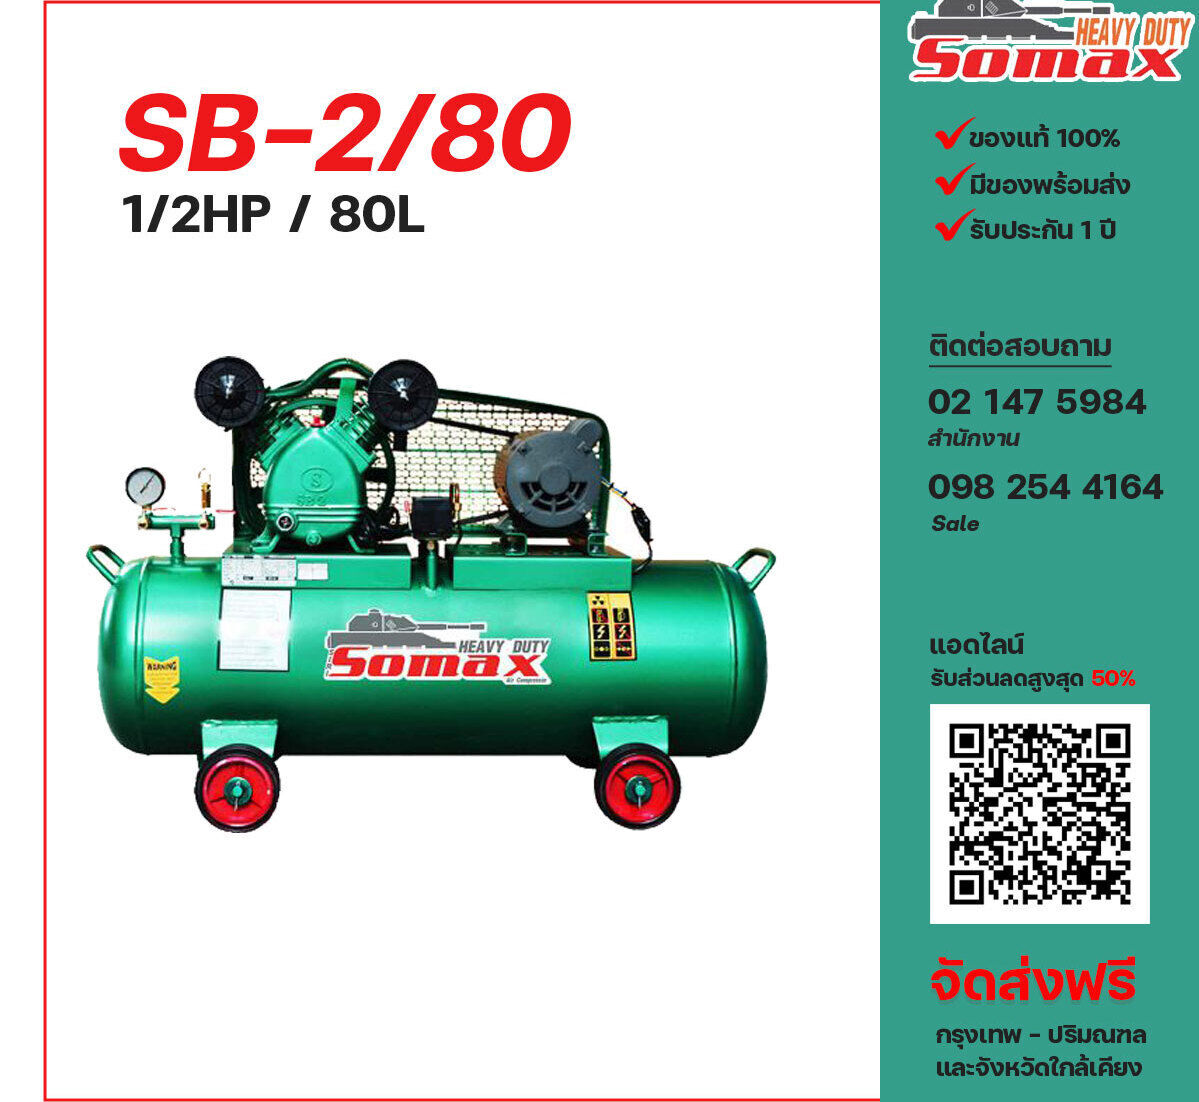 ปั๊มลมโซแม็กซ์ SOMAX SB-2/80 220V ปั๊มลมลูกสูบ ขนาด 2 สูบ 1/2 แรงม้า 80 ลิตร SOMAX พร้อมมอเตอร์ ไฟ 220V ส่งฟรี กรุงเทพฯ-ปริมณฑล รับประกัน 1 ปี